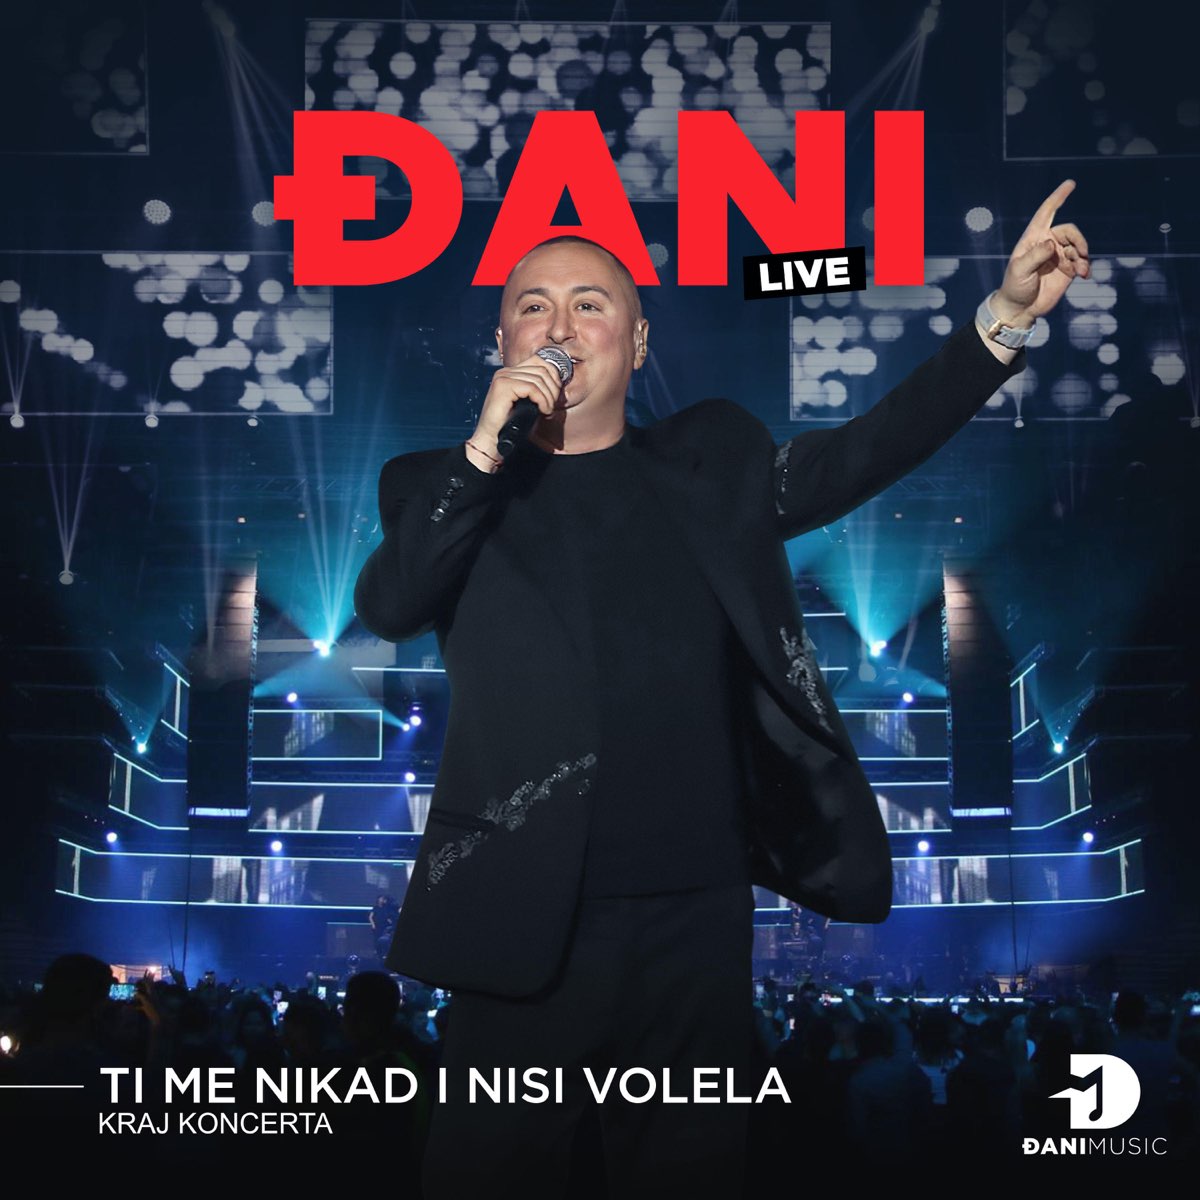 Ti me nikad I nisi volela - kraj koncerta (Live) - Single by Djani on Apple  Music